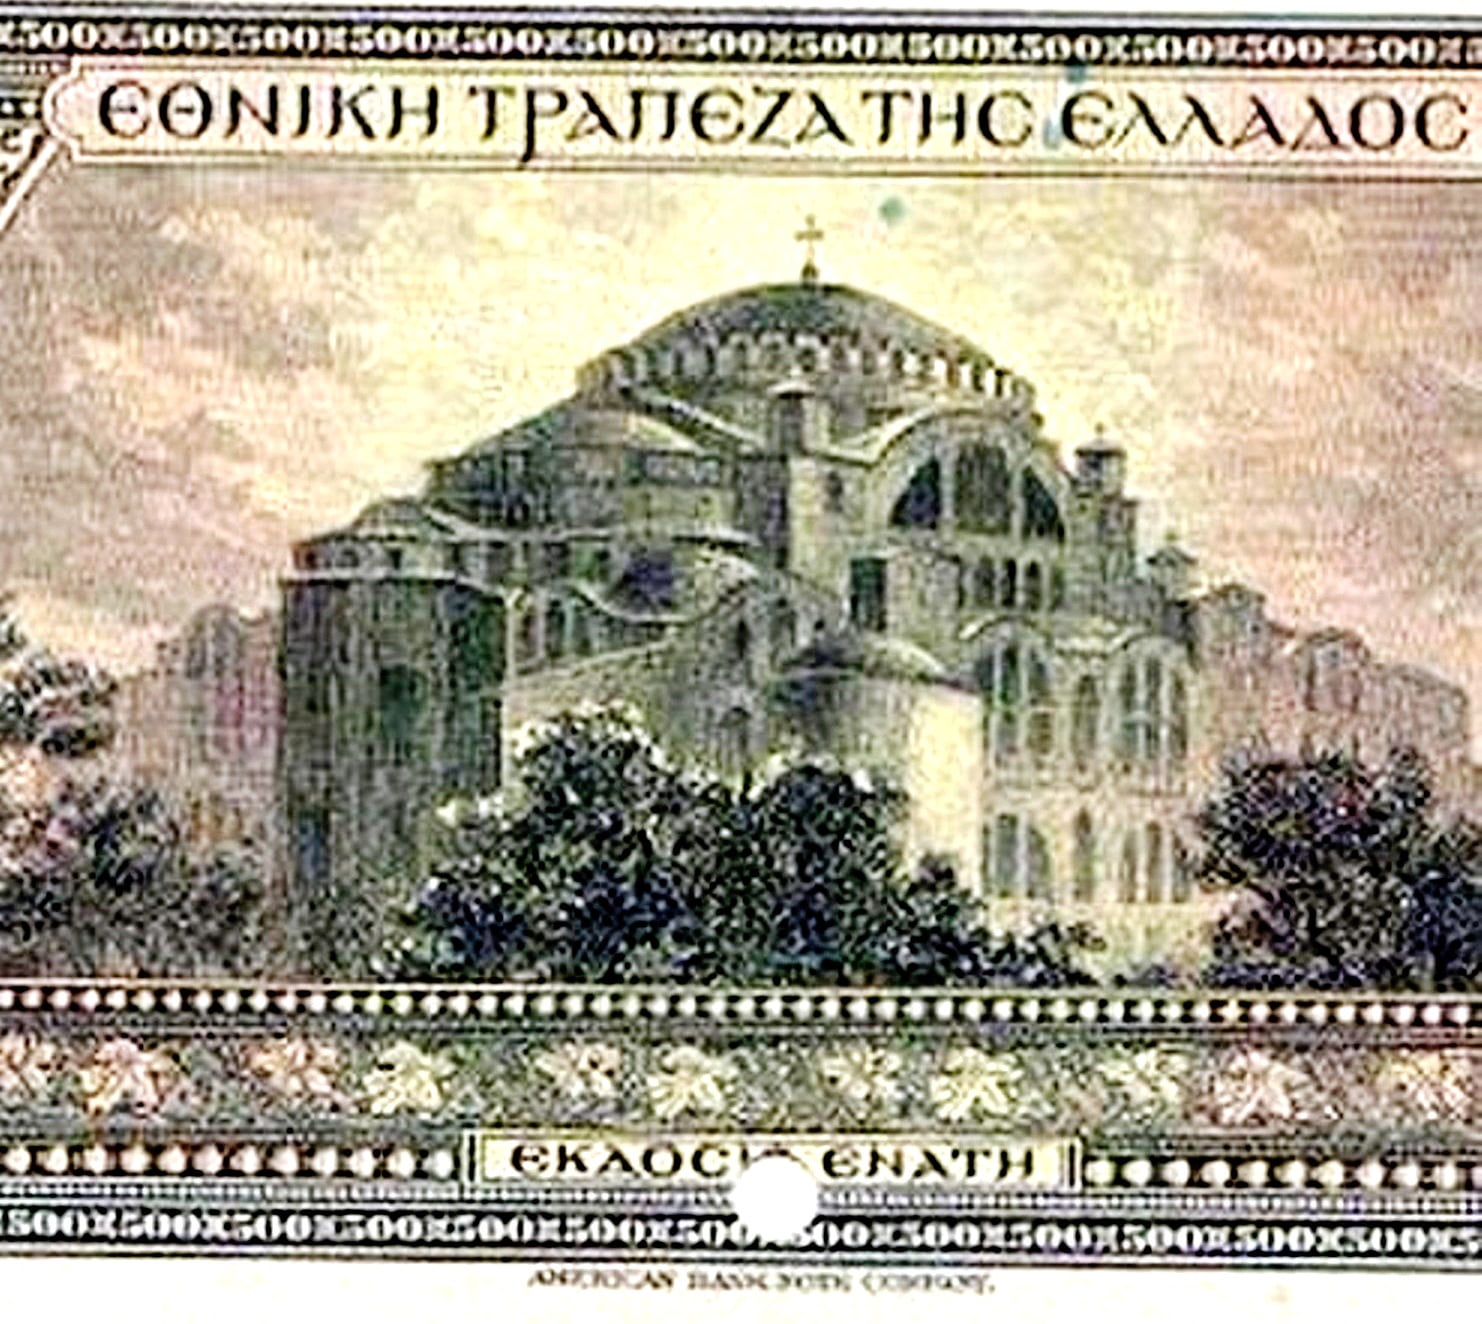 Η Αγια Σοφιά χωρίς μιναρέδες και με χριστιανικό σταυρό στον τρούλο, σε ελληνικό χαρτονόμισμα του 1923